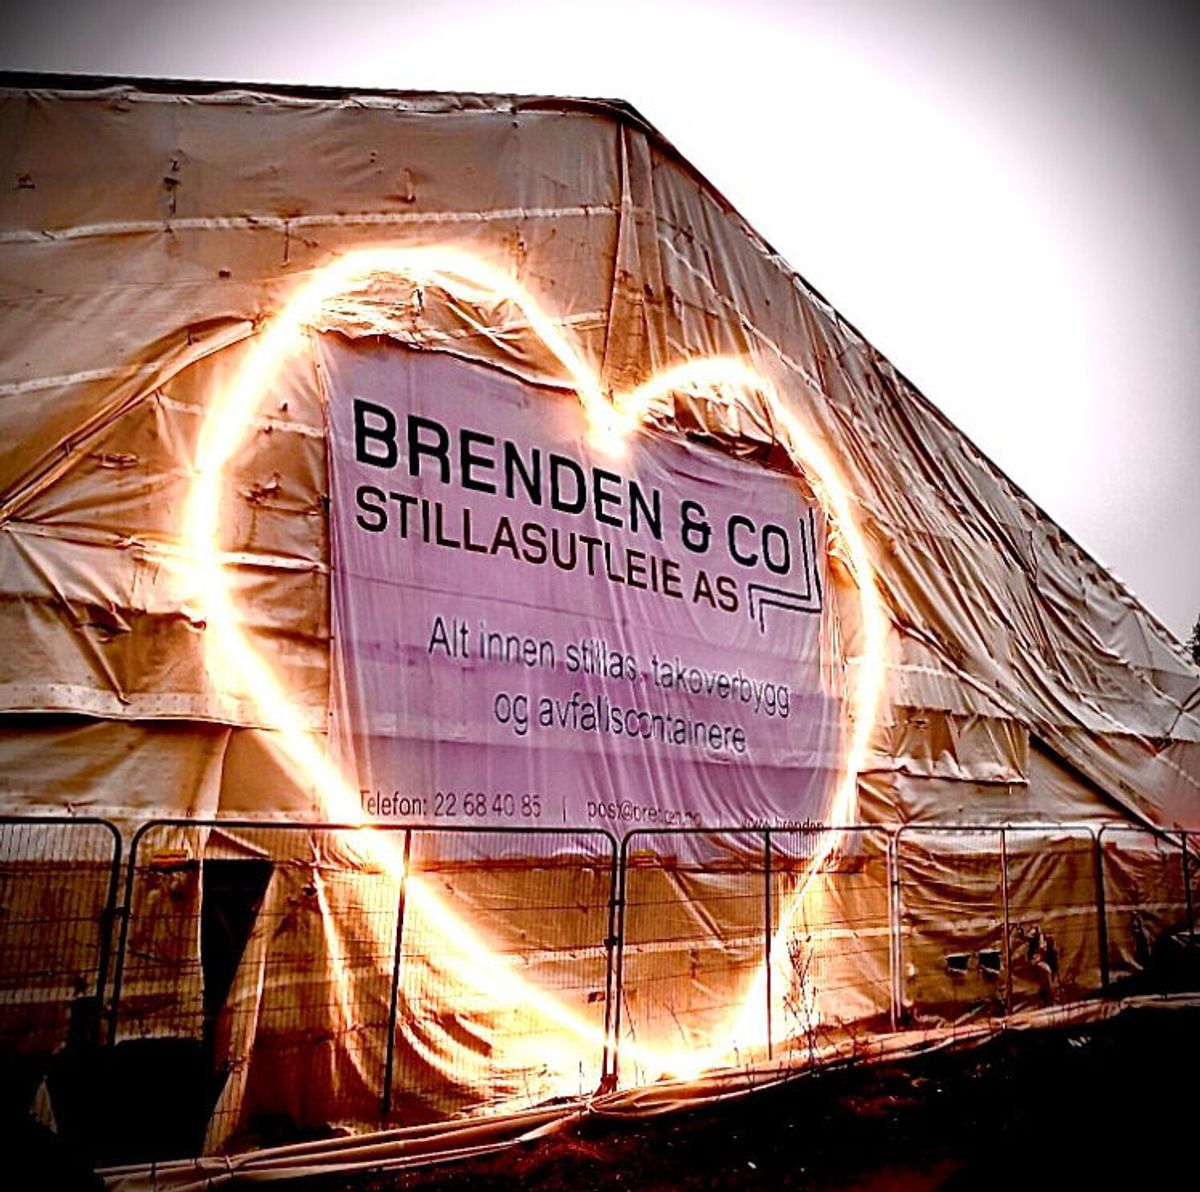 Brenden & Co Stillasutleie har satt opp hjerte på en utstyrstomt i Enebakkveien. Foto: Thomas Brenden